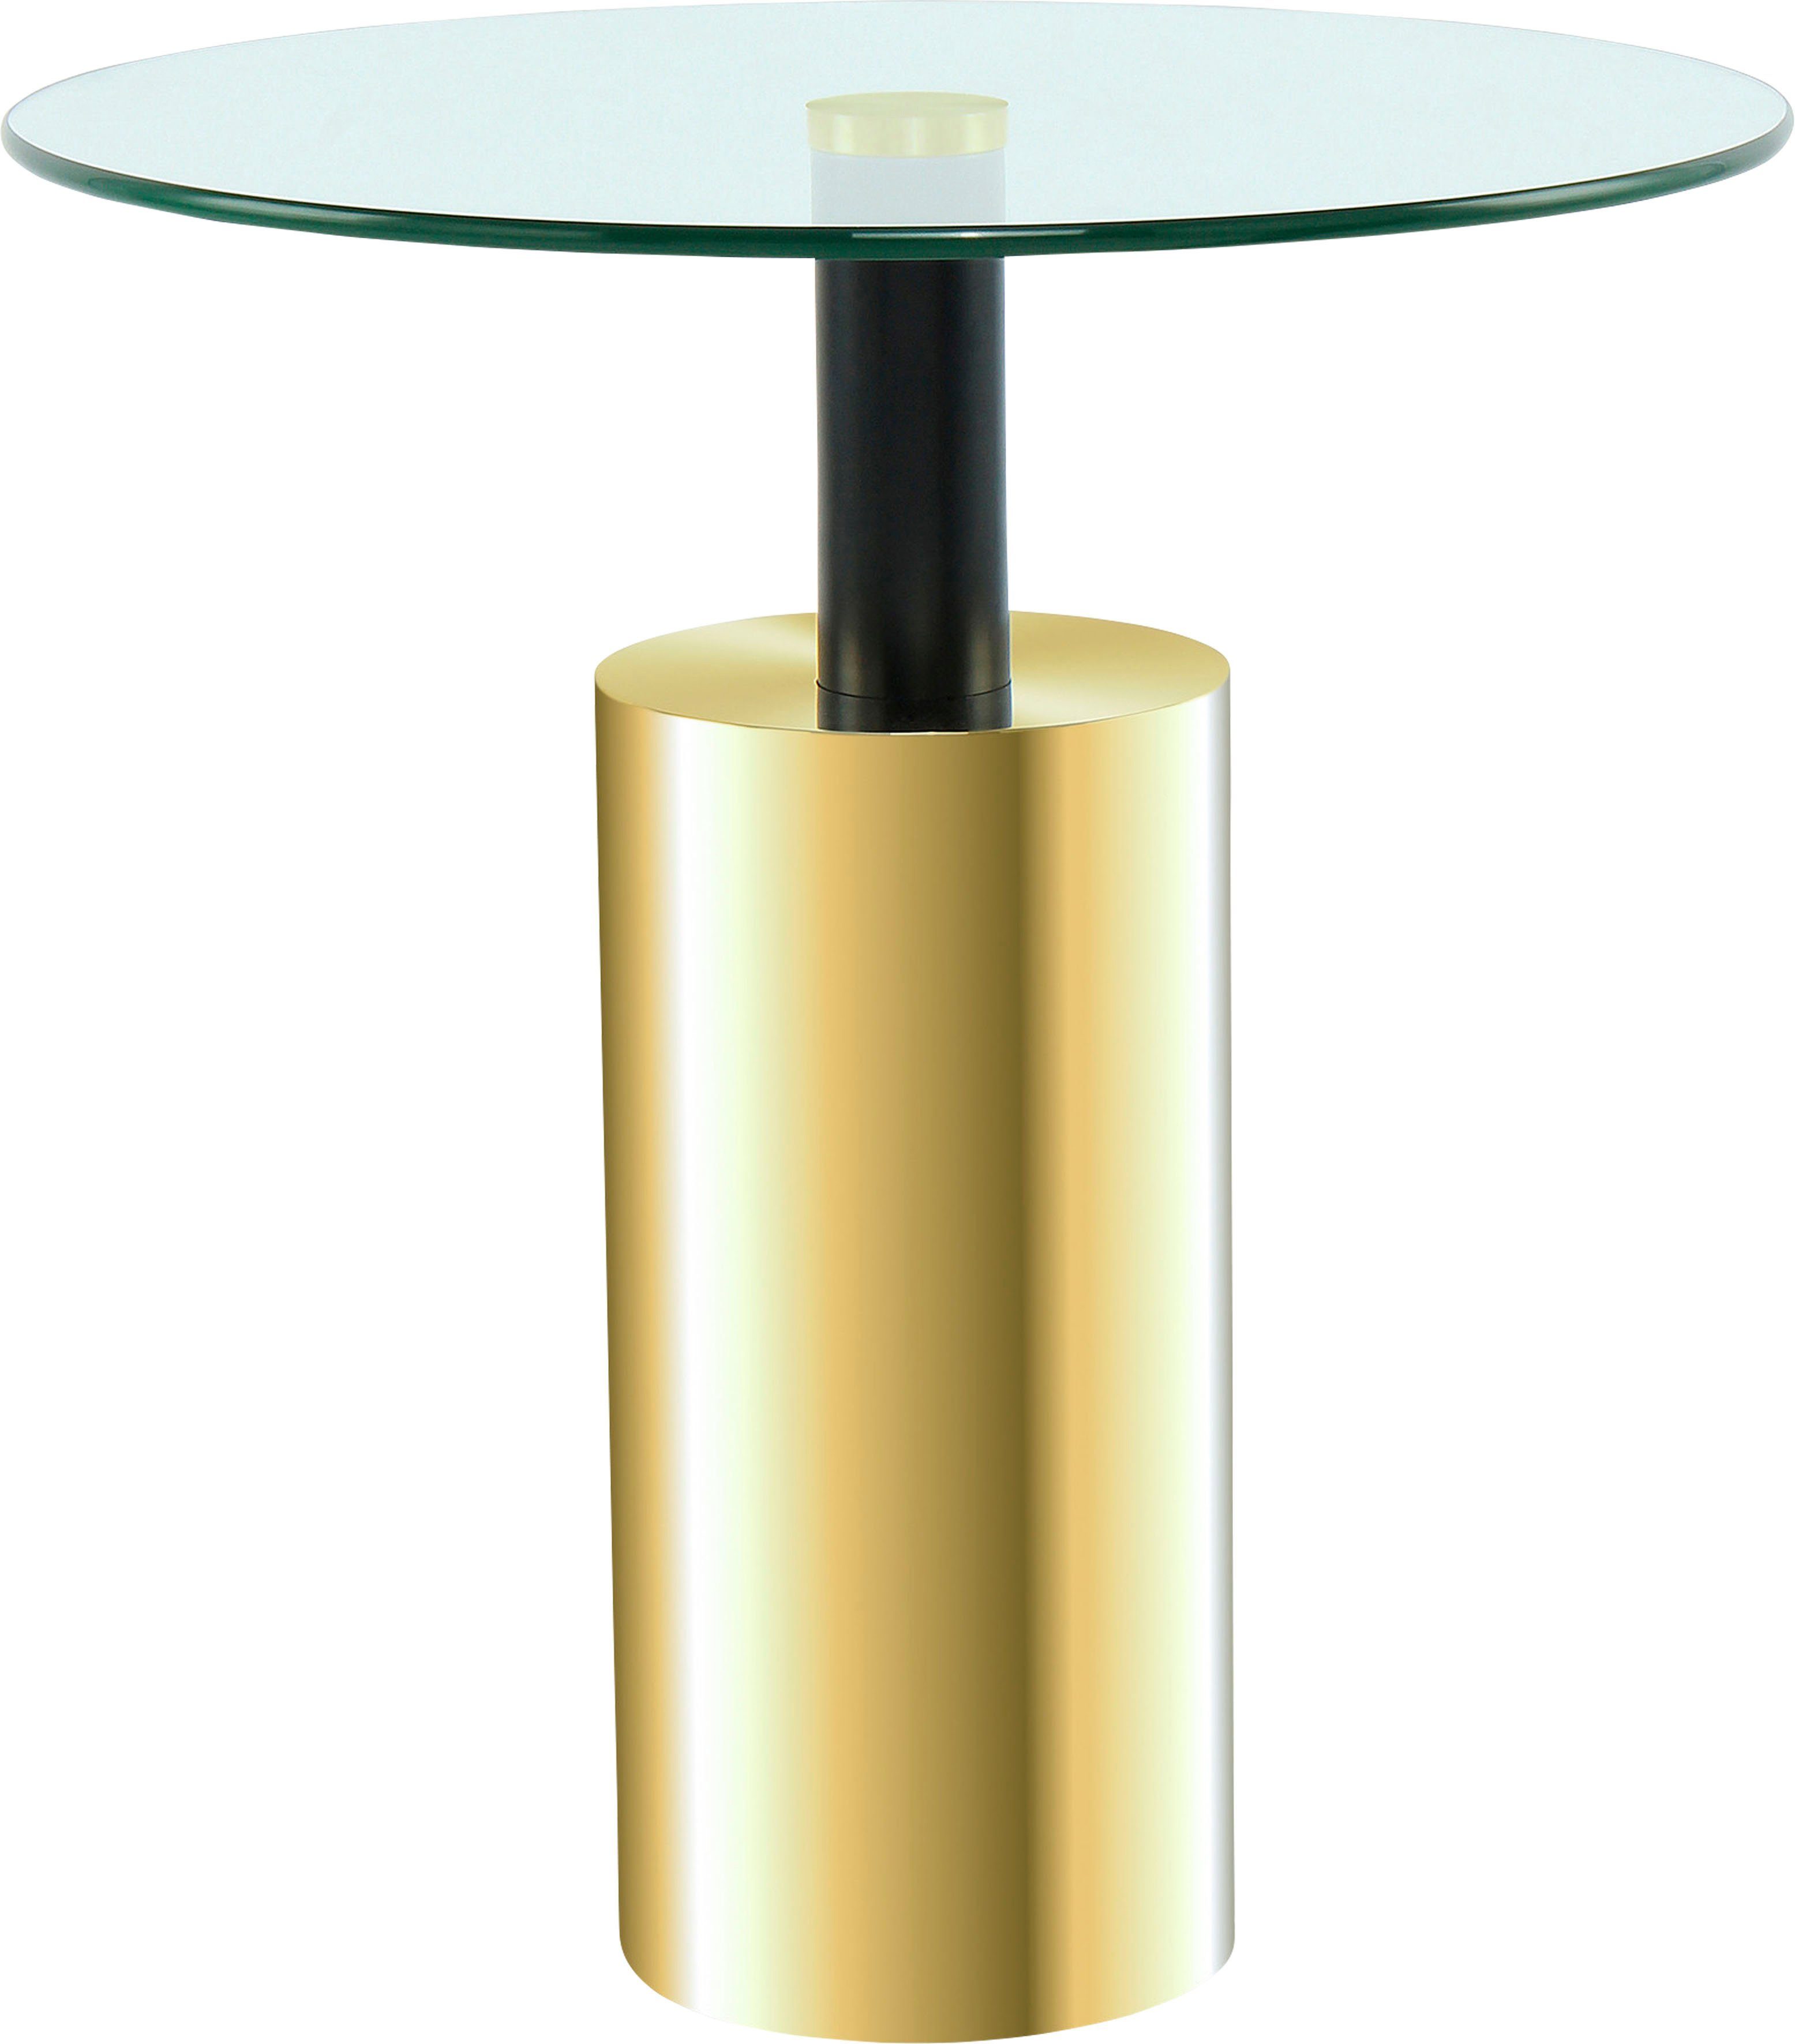 Kayoom Beistelltisch Beistelltisch Rosanna 525, Runde Tischplatte, edles Design, zeitlose Farben, Sockel: Ø 15 cm